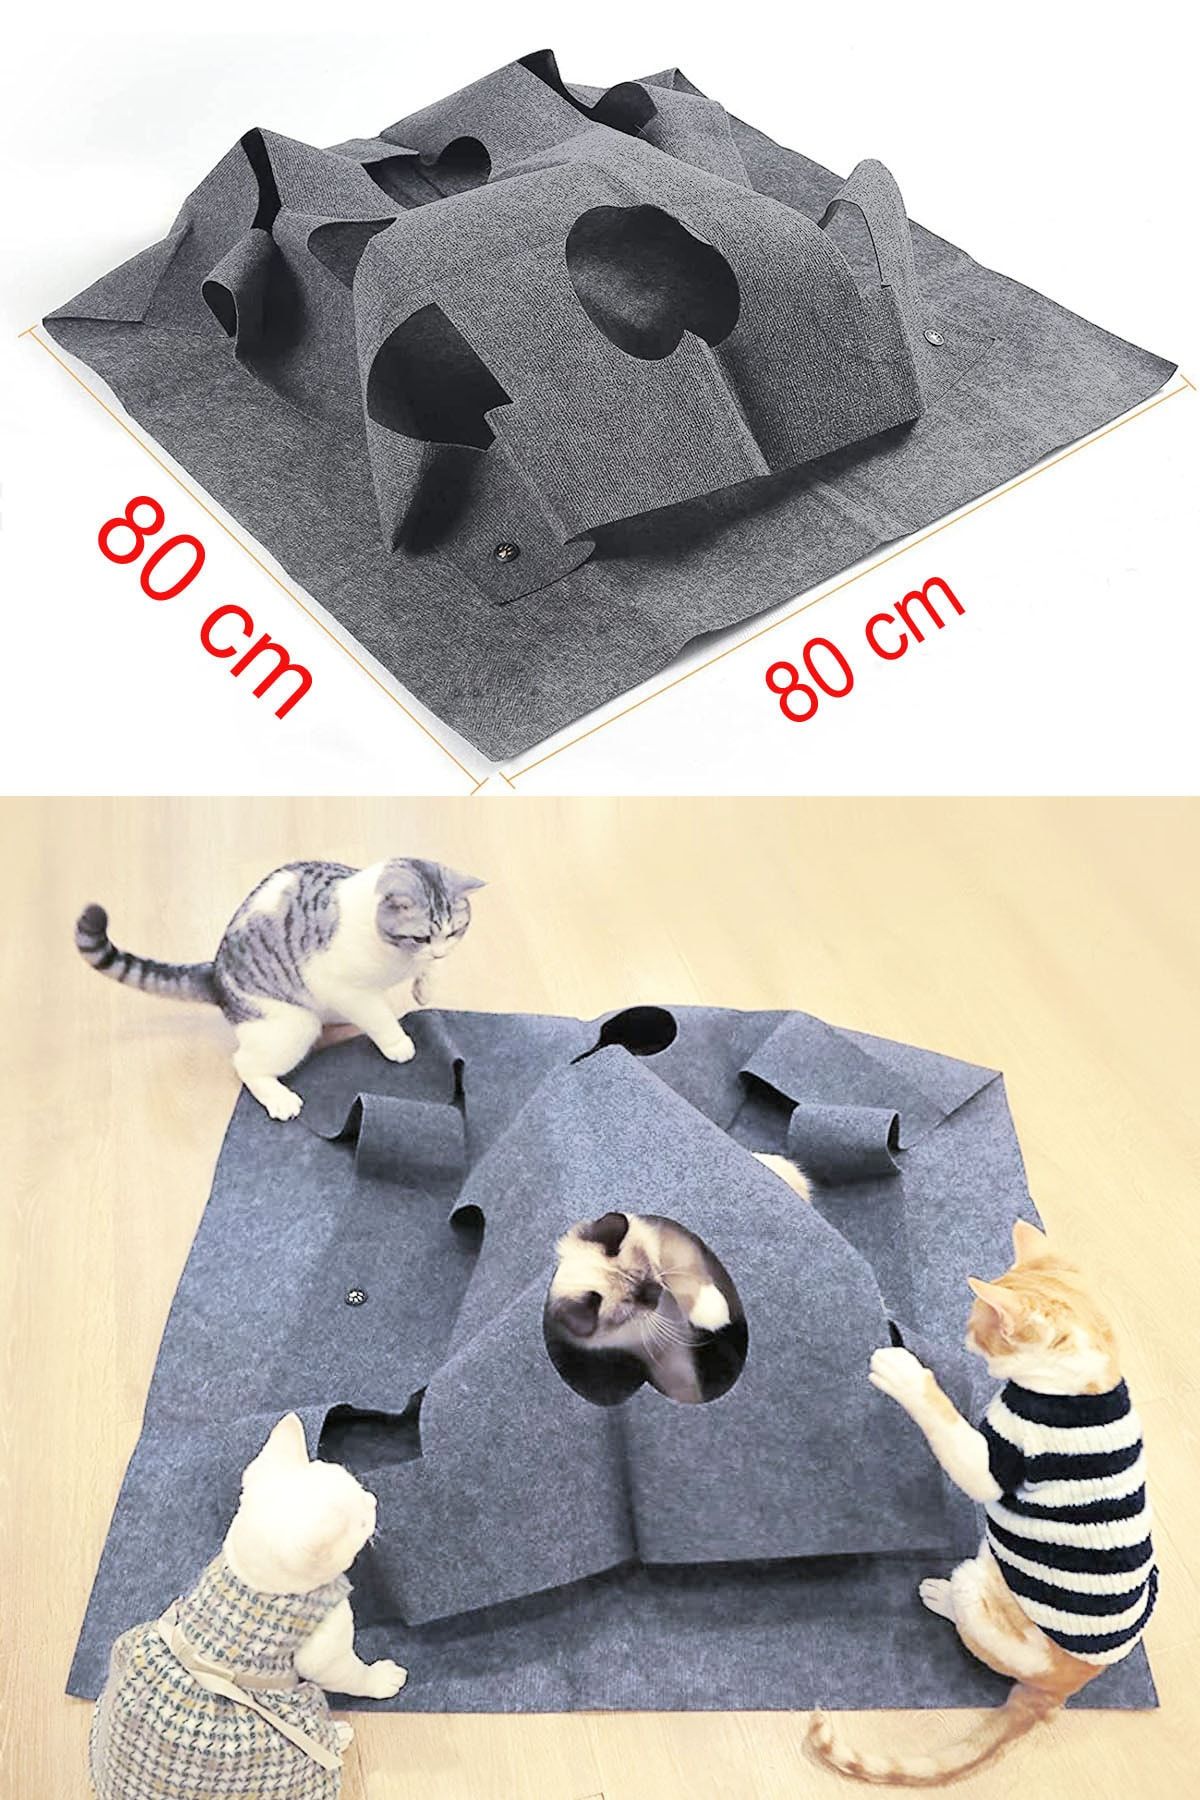 Sisso Luck Kedi Tüneli Fonksiyonel Kedi Yatağı Evcil Kedi Tepeleri Oyun Alanı Interaktif Kedi Oyuncağı